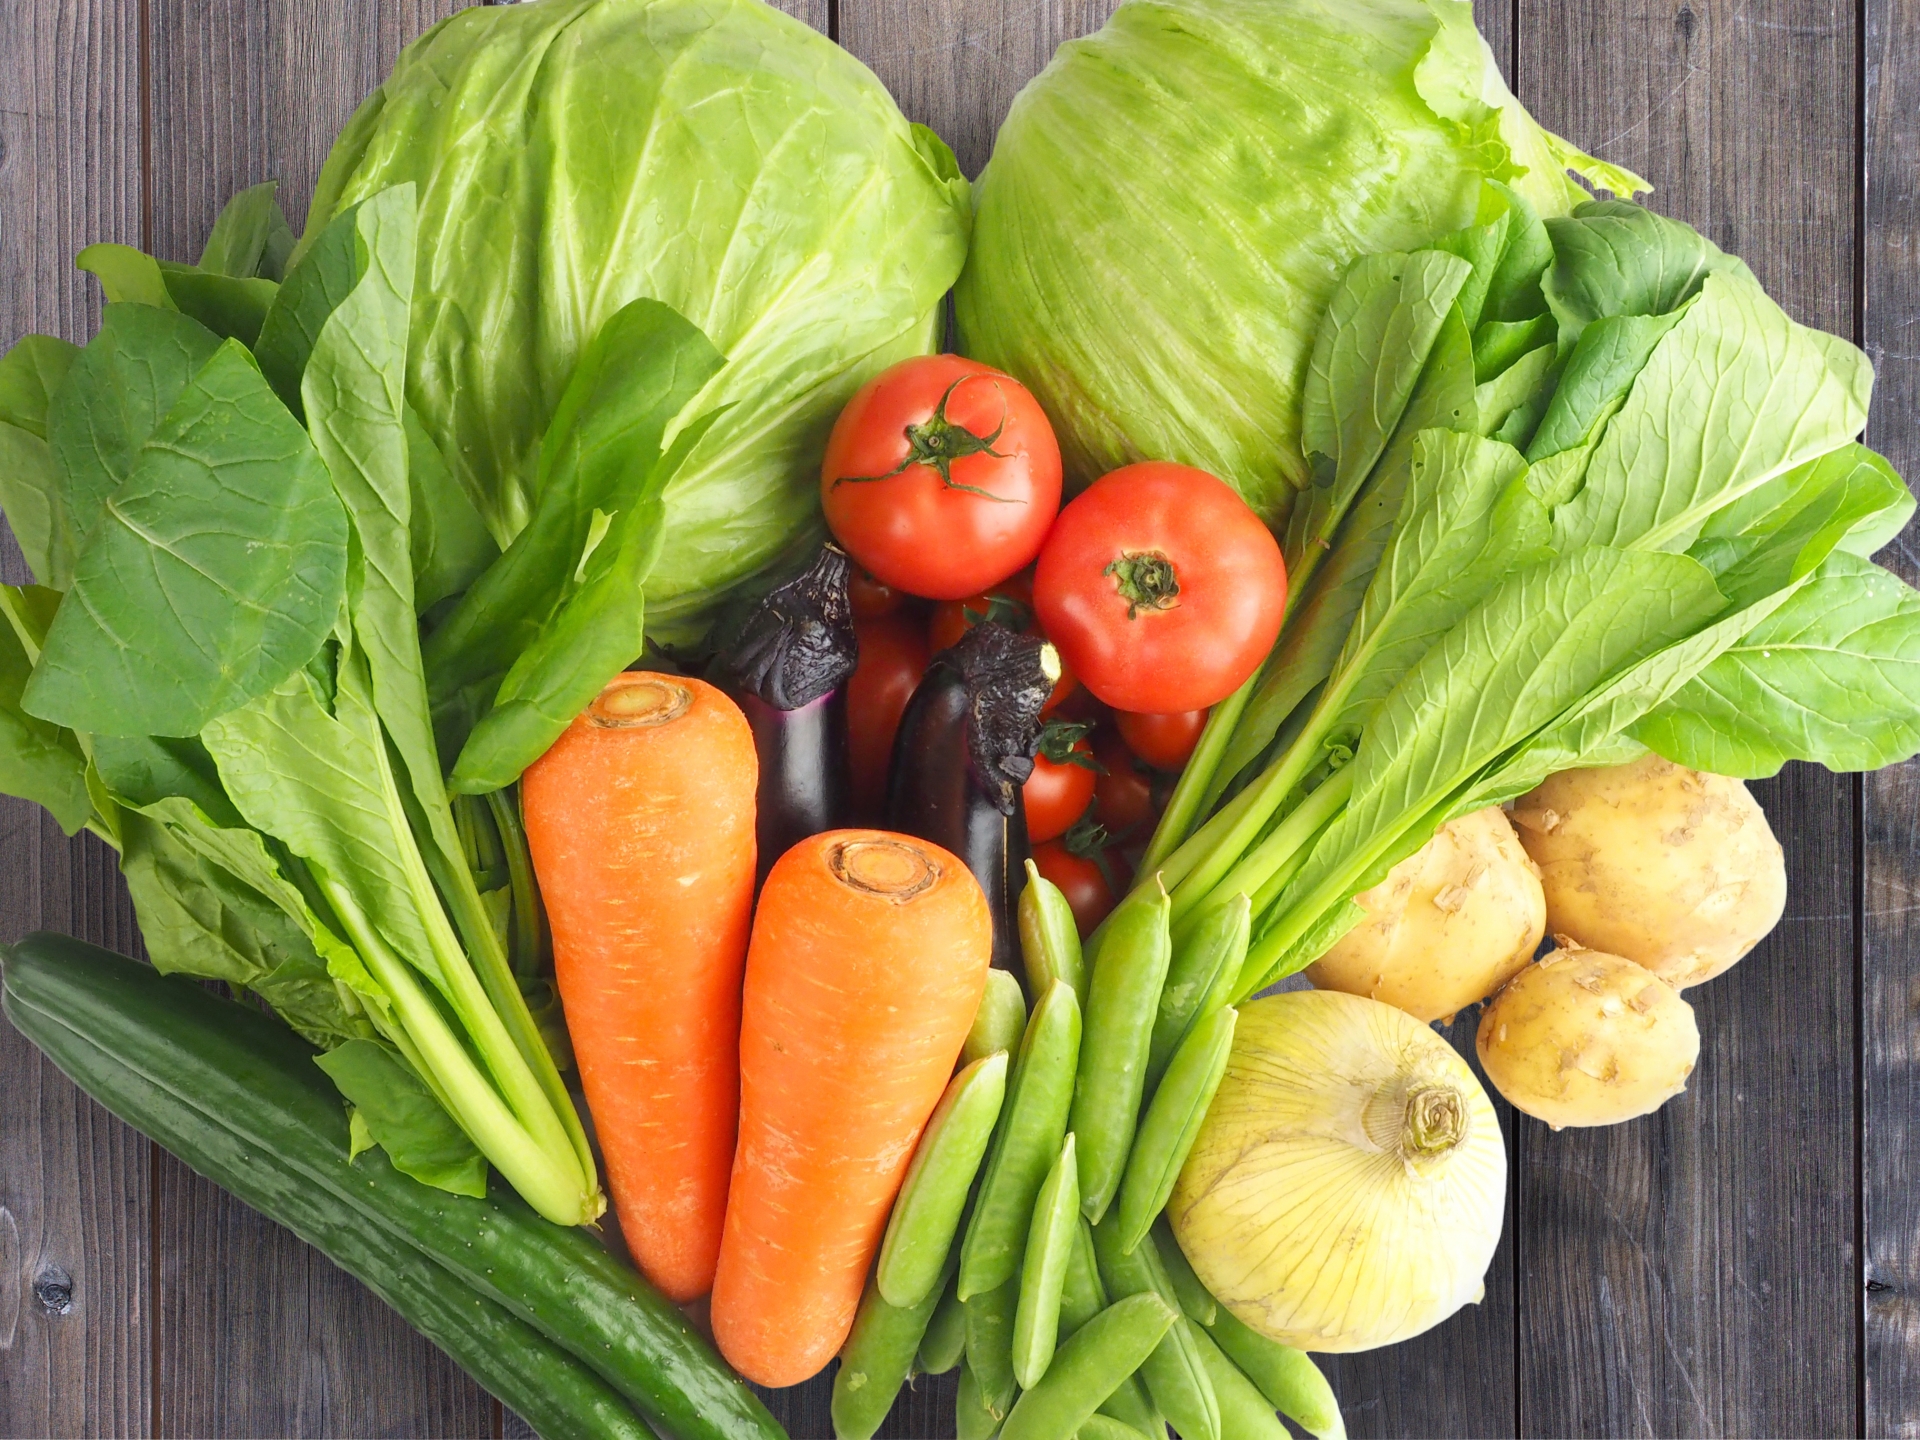 野菜嫌いのはずが無性に野菜が食べたい矛盾 福岡パンフレット 社員ブログ